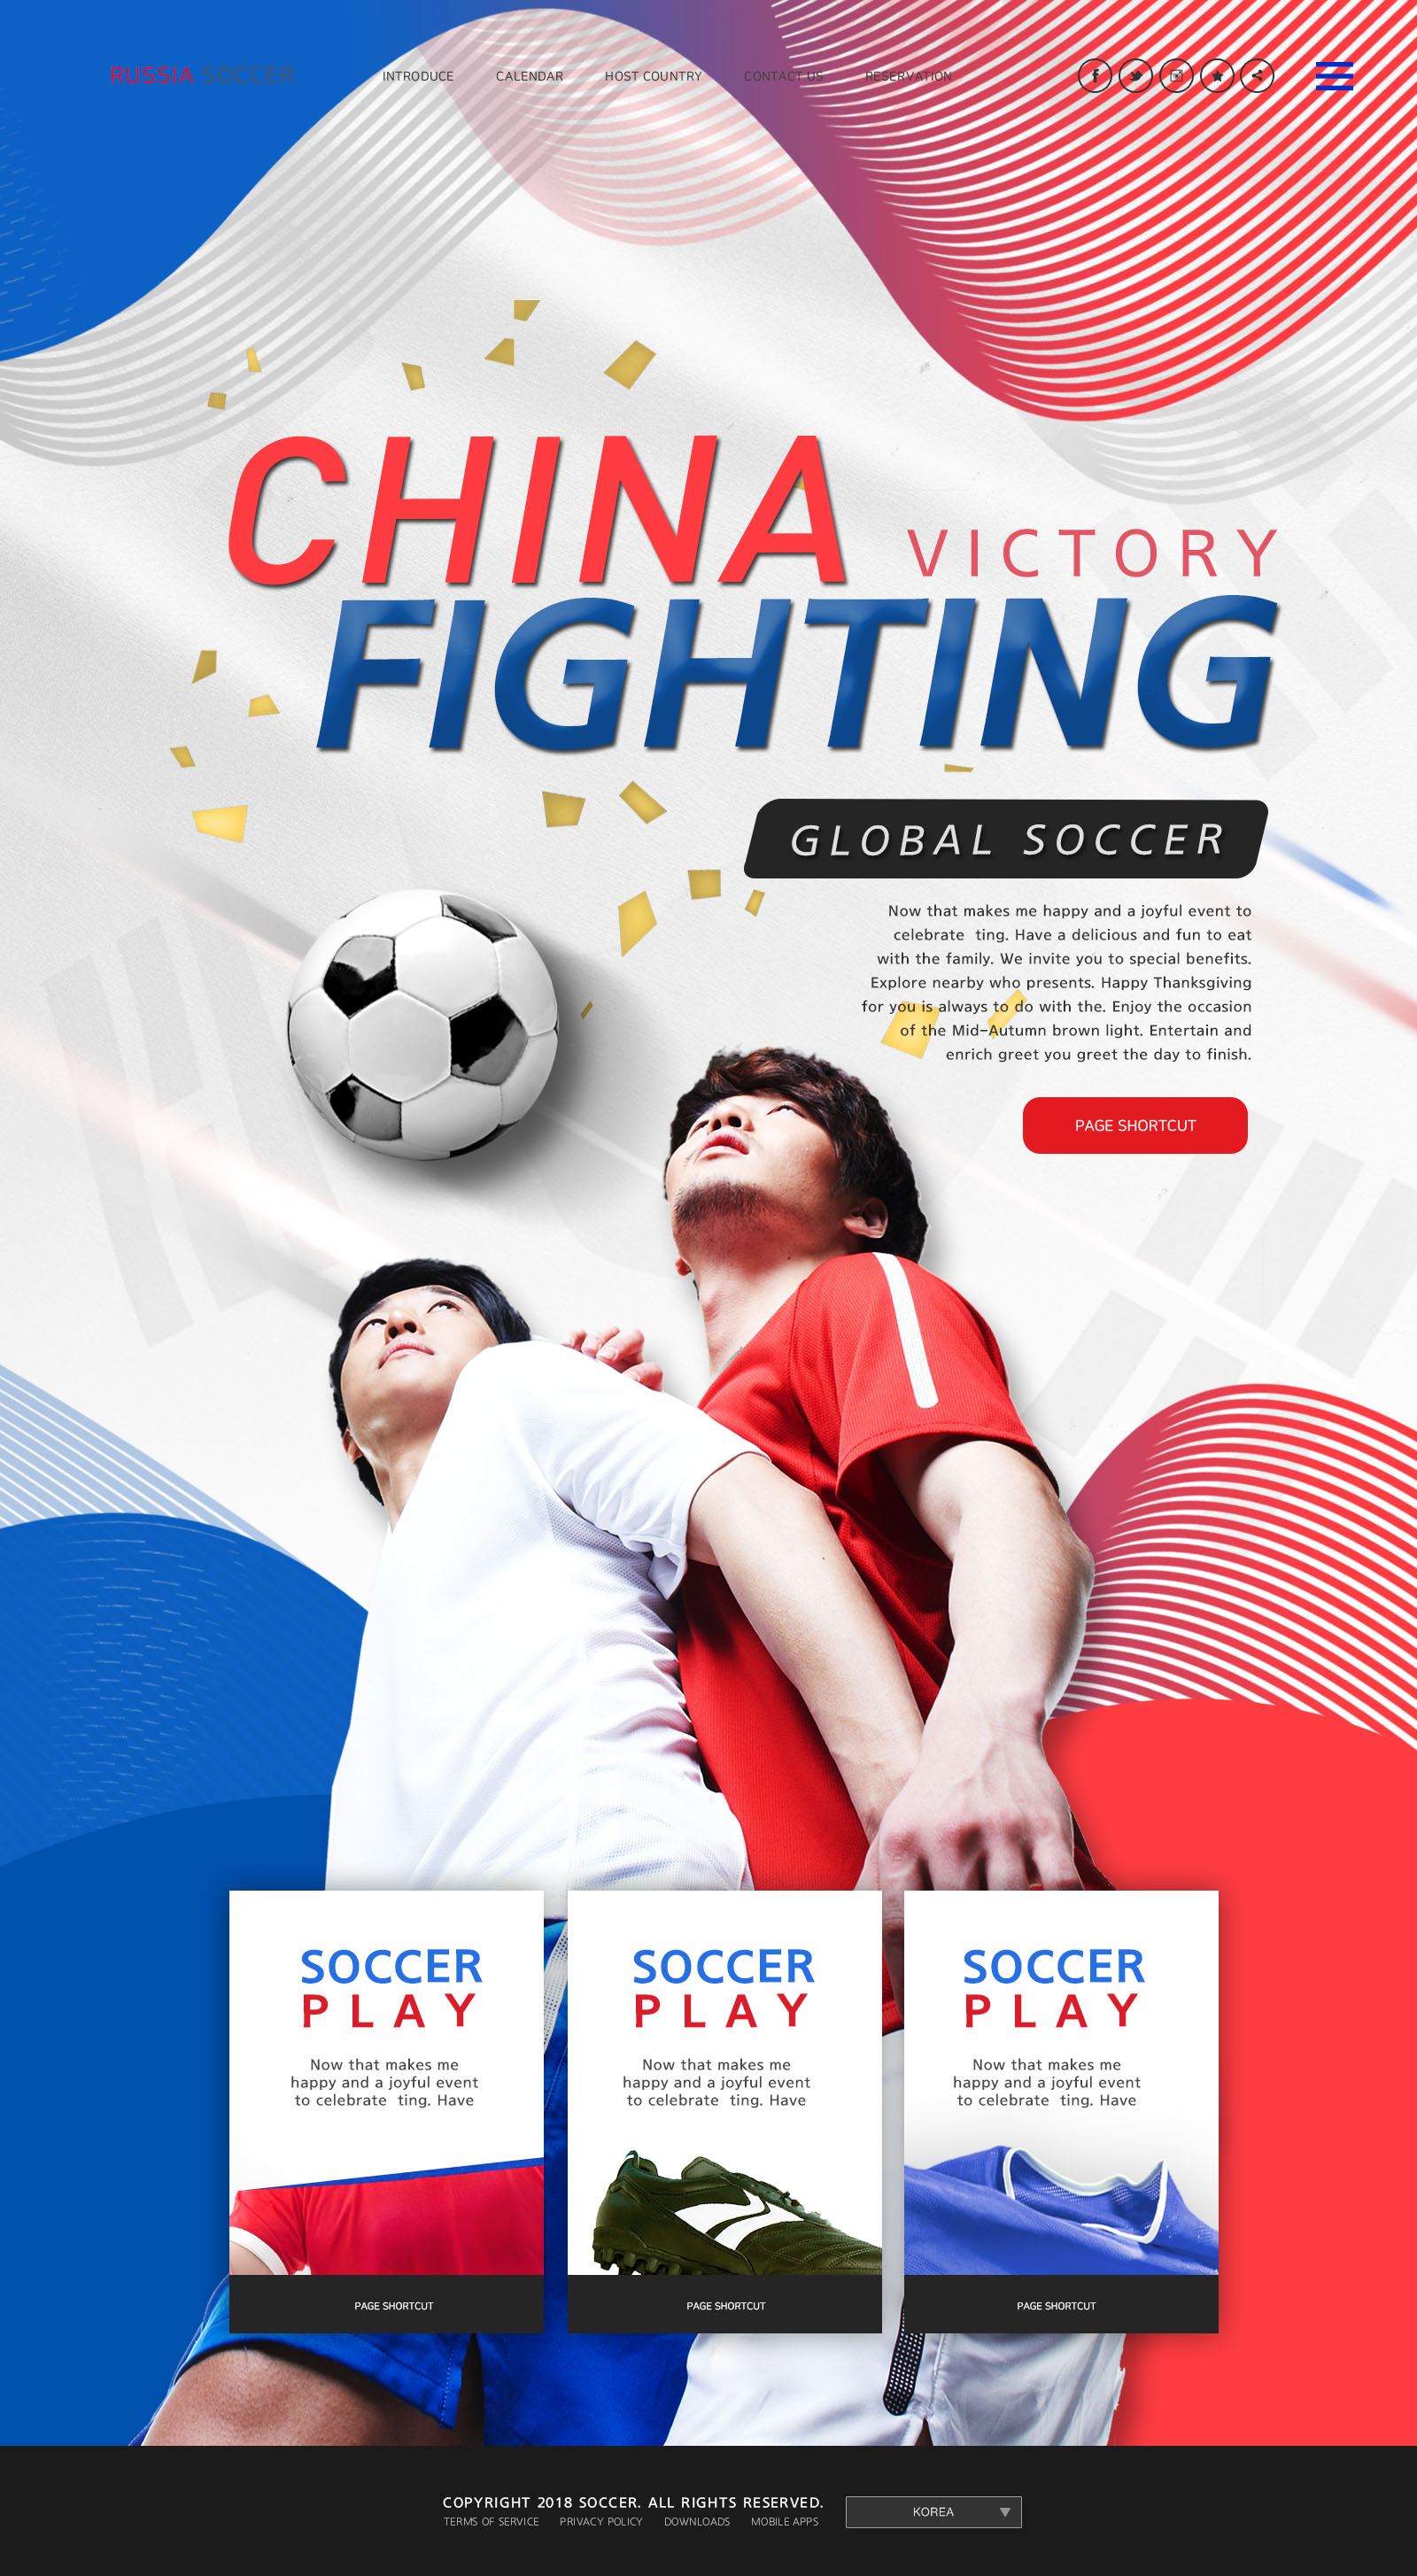 世界杯足球专题广告设计PSD模板大洋岛精选(韩国风格)插图6